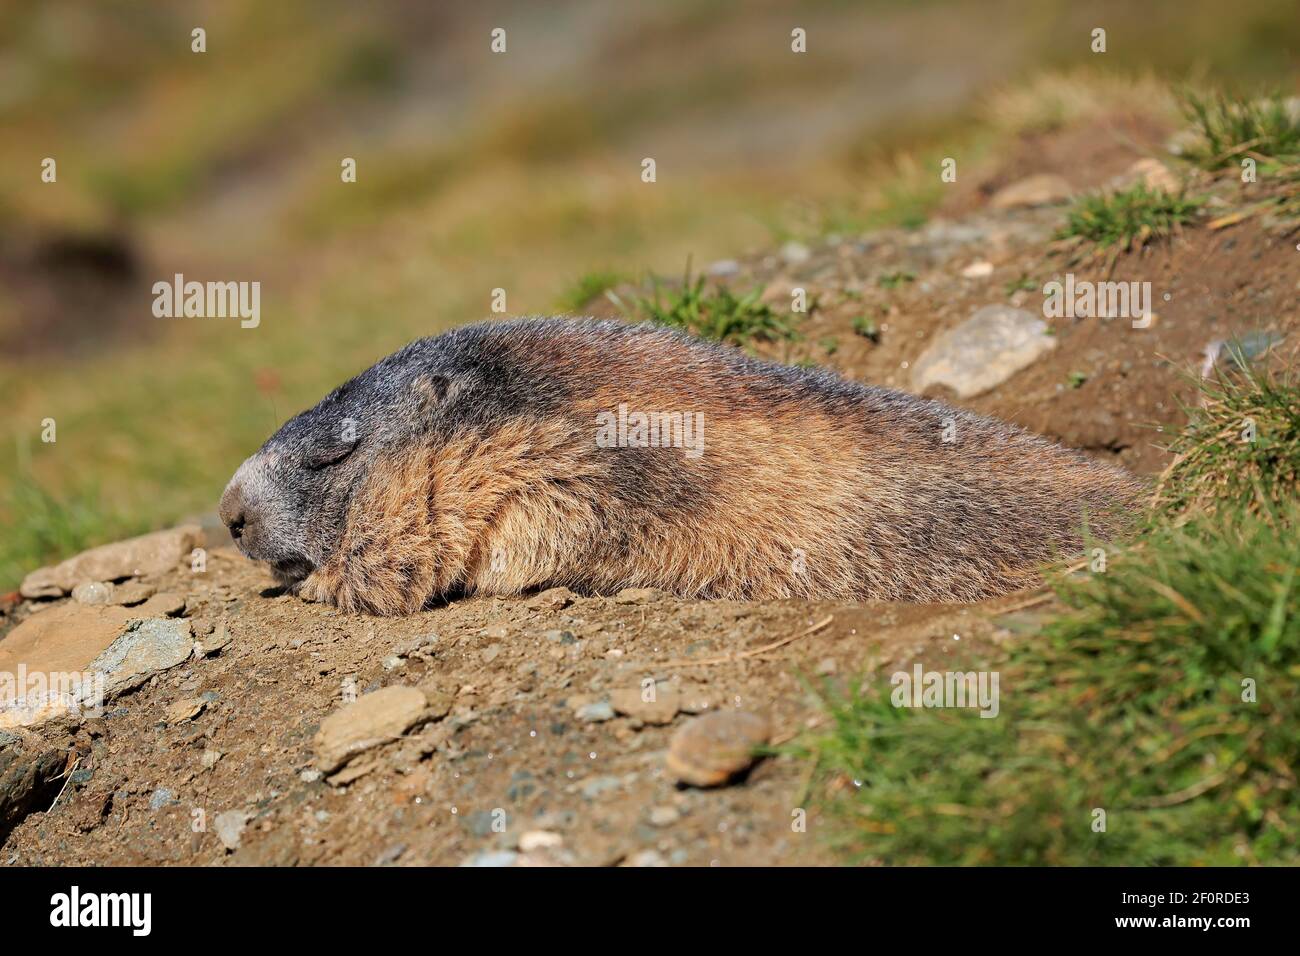 Marmotte alpine (Marmota marmota), adulte, au terrier, dormant, reposant, Portrait, massif de Grossglockner, Parc national de Hohe Tauern, Alpes, Autriche Banque D'Images